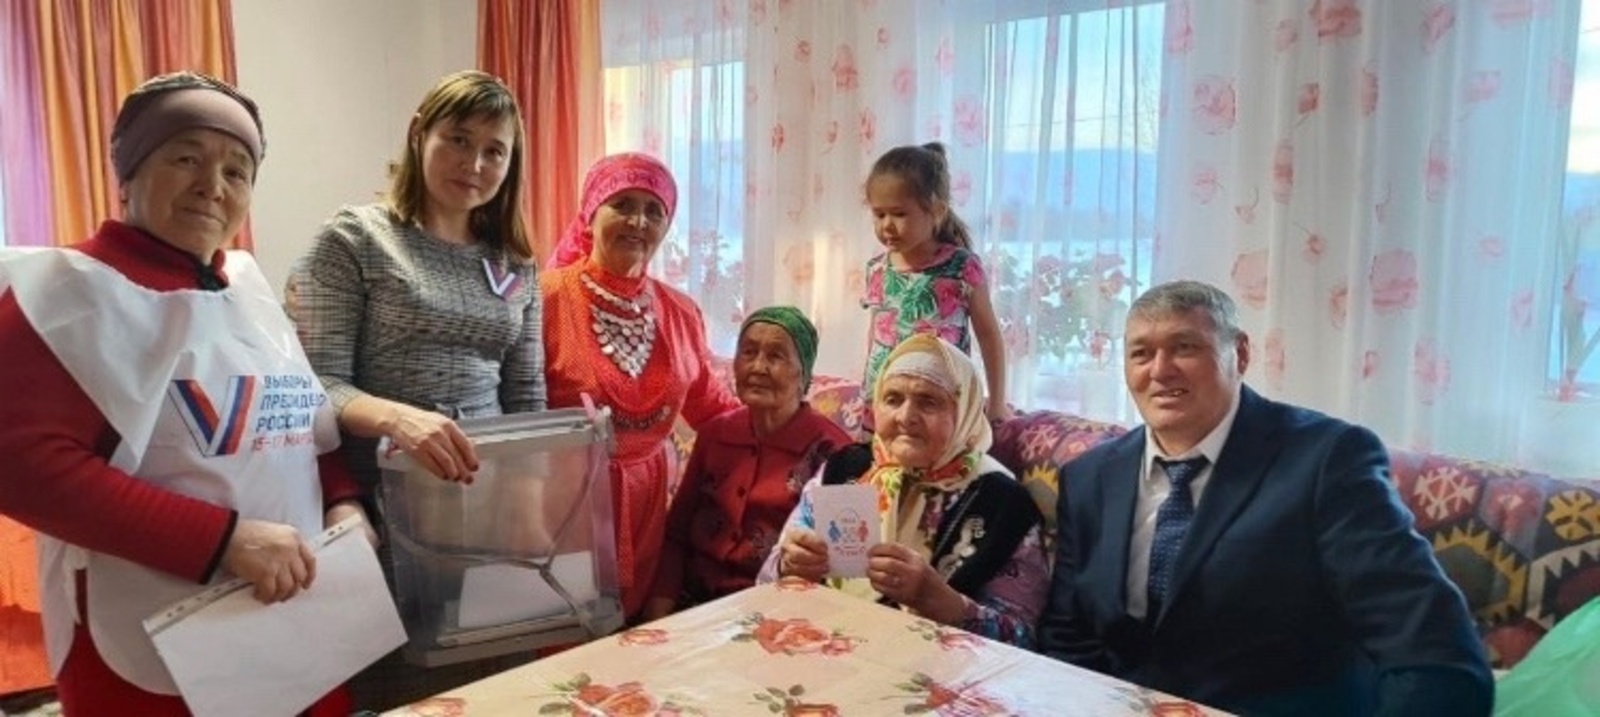 Жительница Баймакского района проголосовала в день своего 90-летия